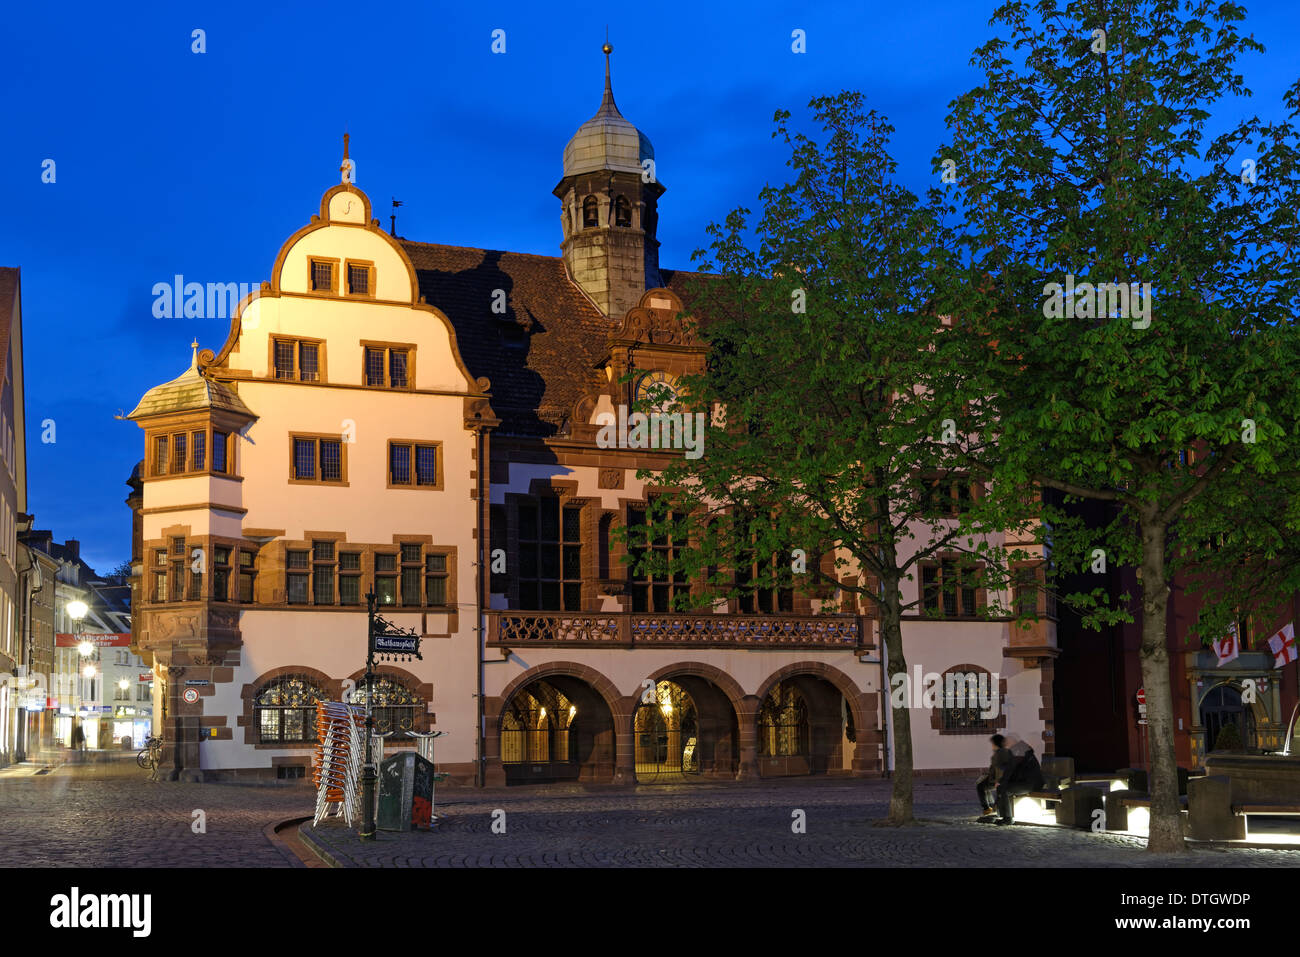 Town Hall, Rathausplatz square, Freiburg im Breisgau, Baden-Württemberg, Germania Foto Stock